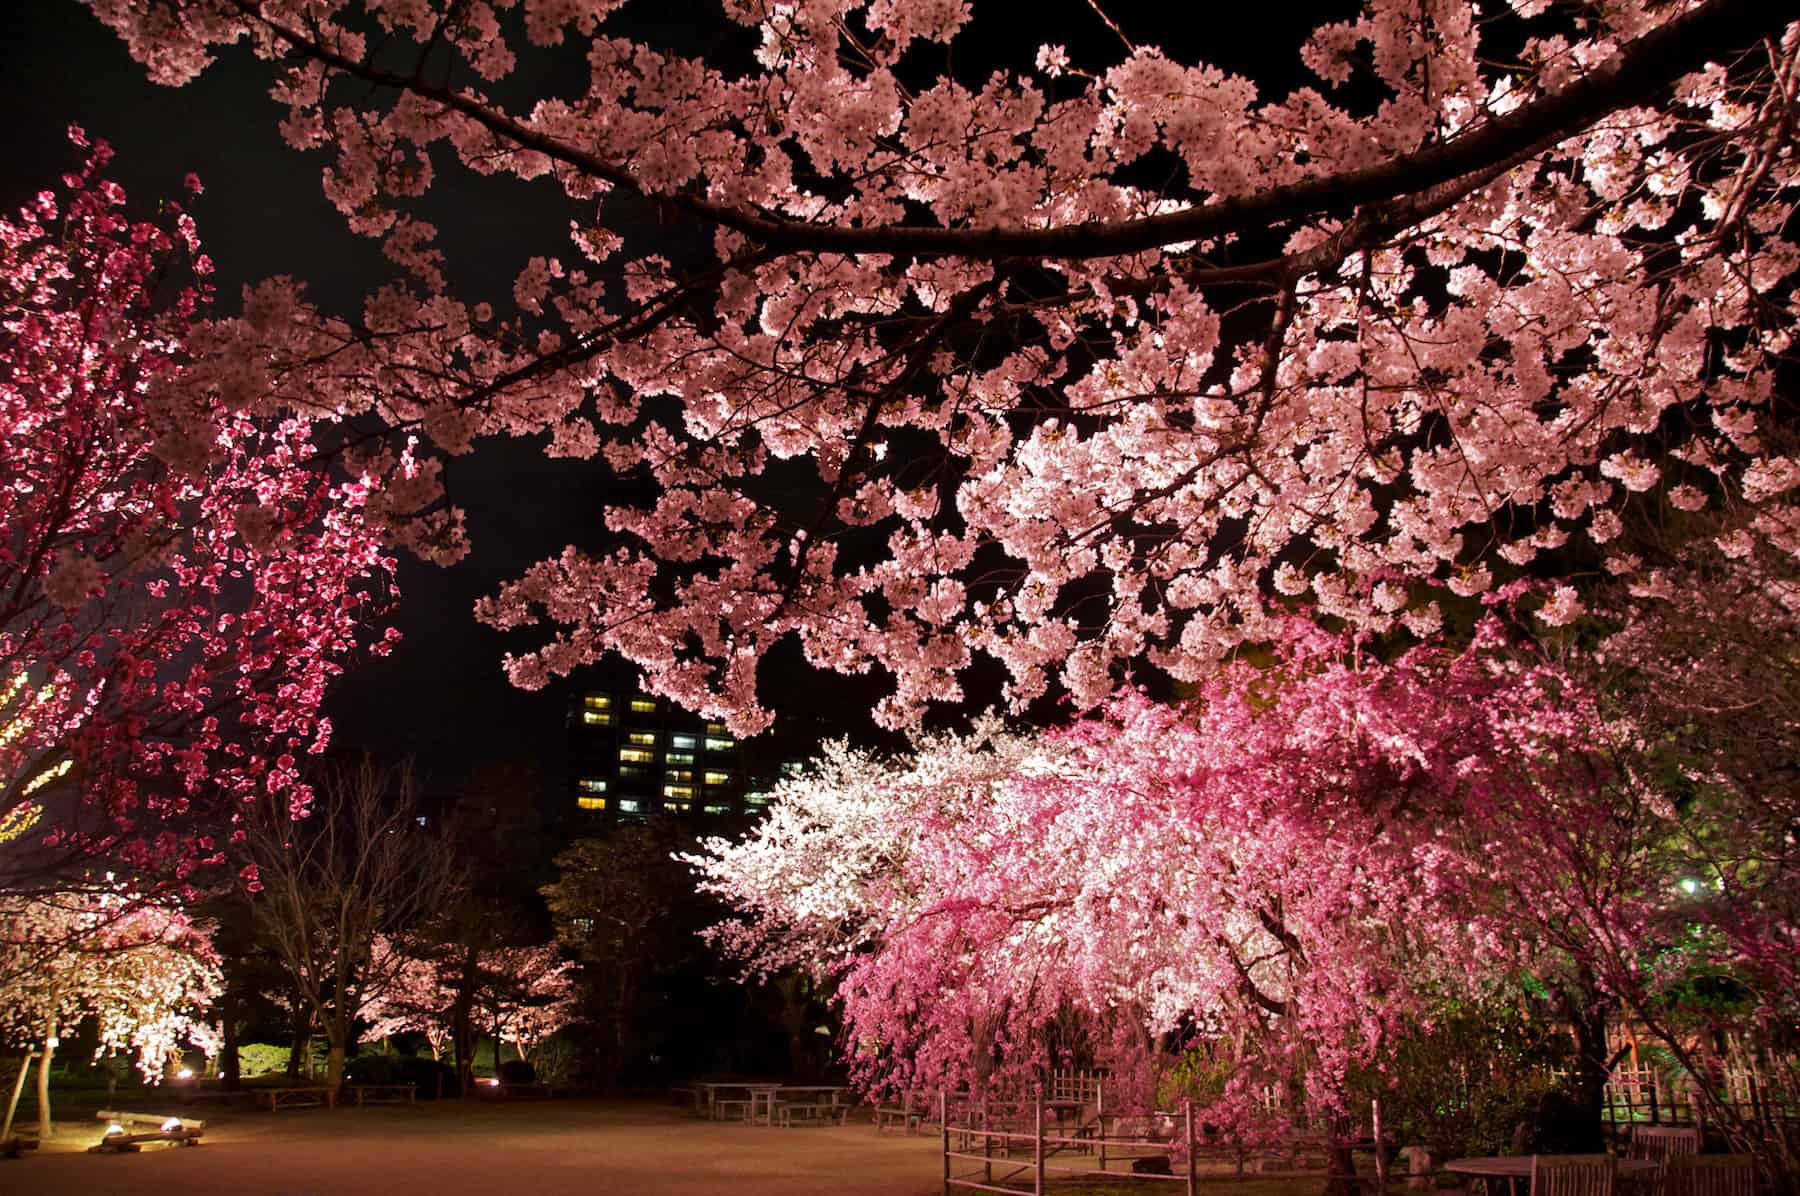 Yozakura illuminated cherry blossoms at Shukkeien Get Hiroshima